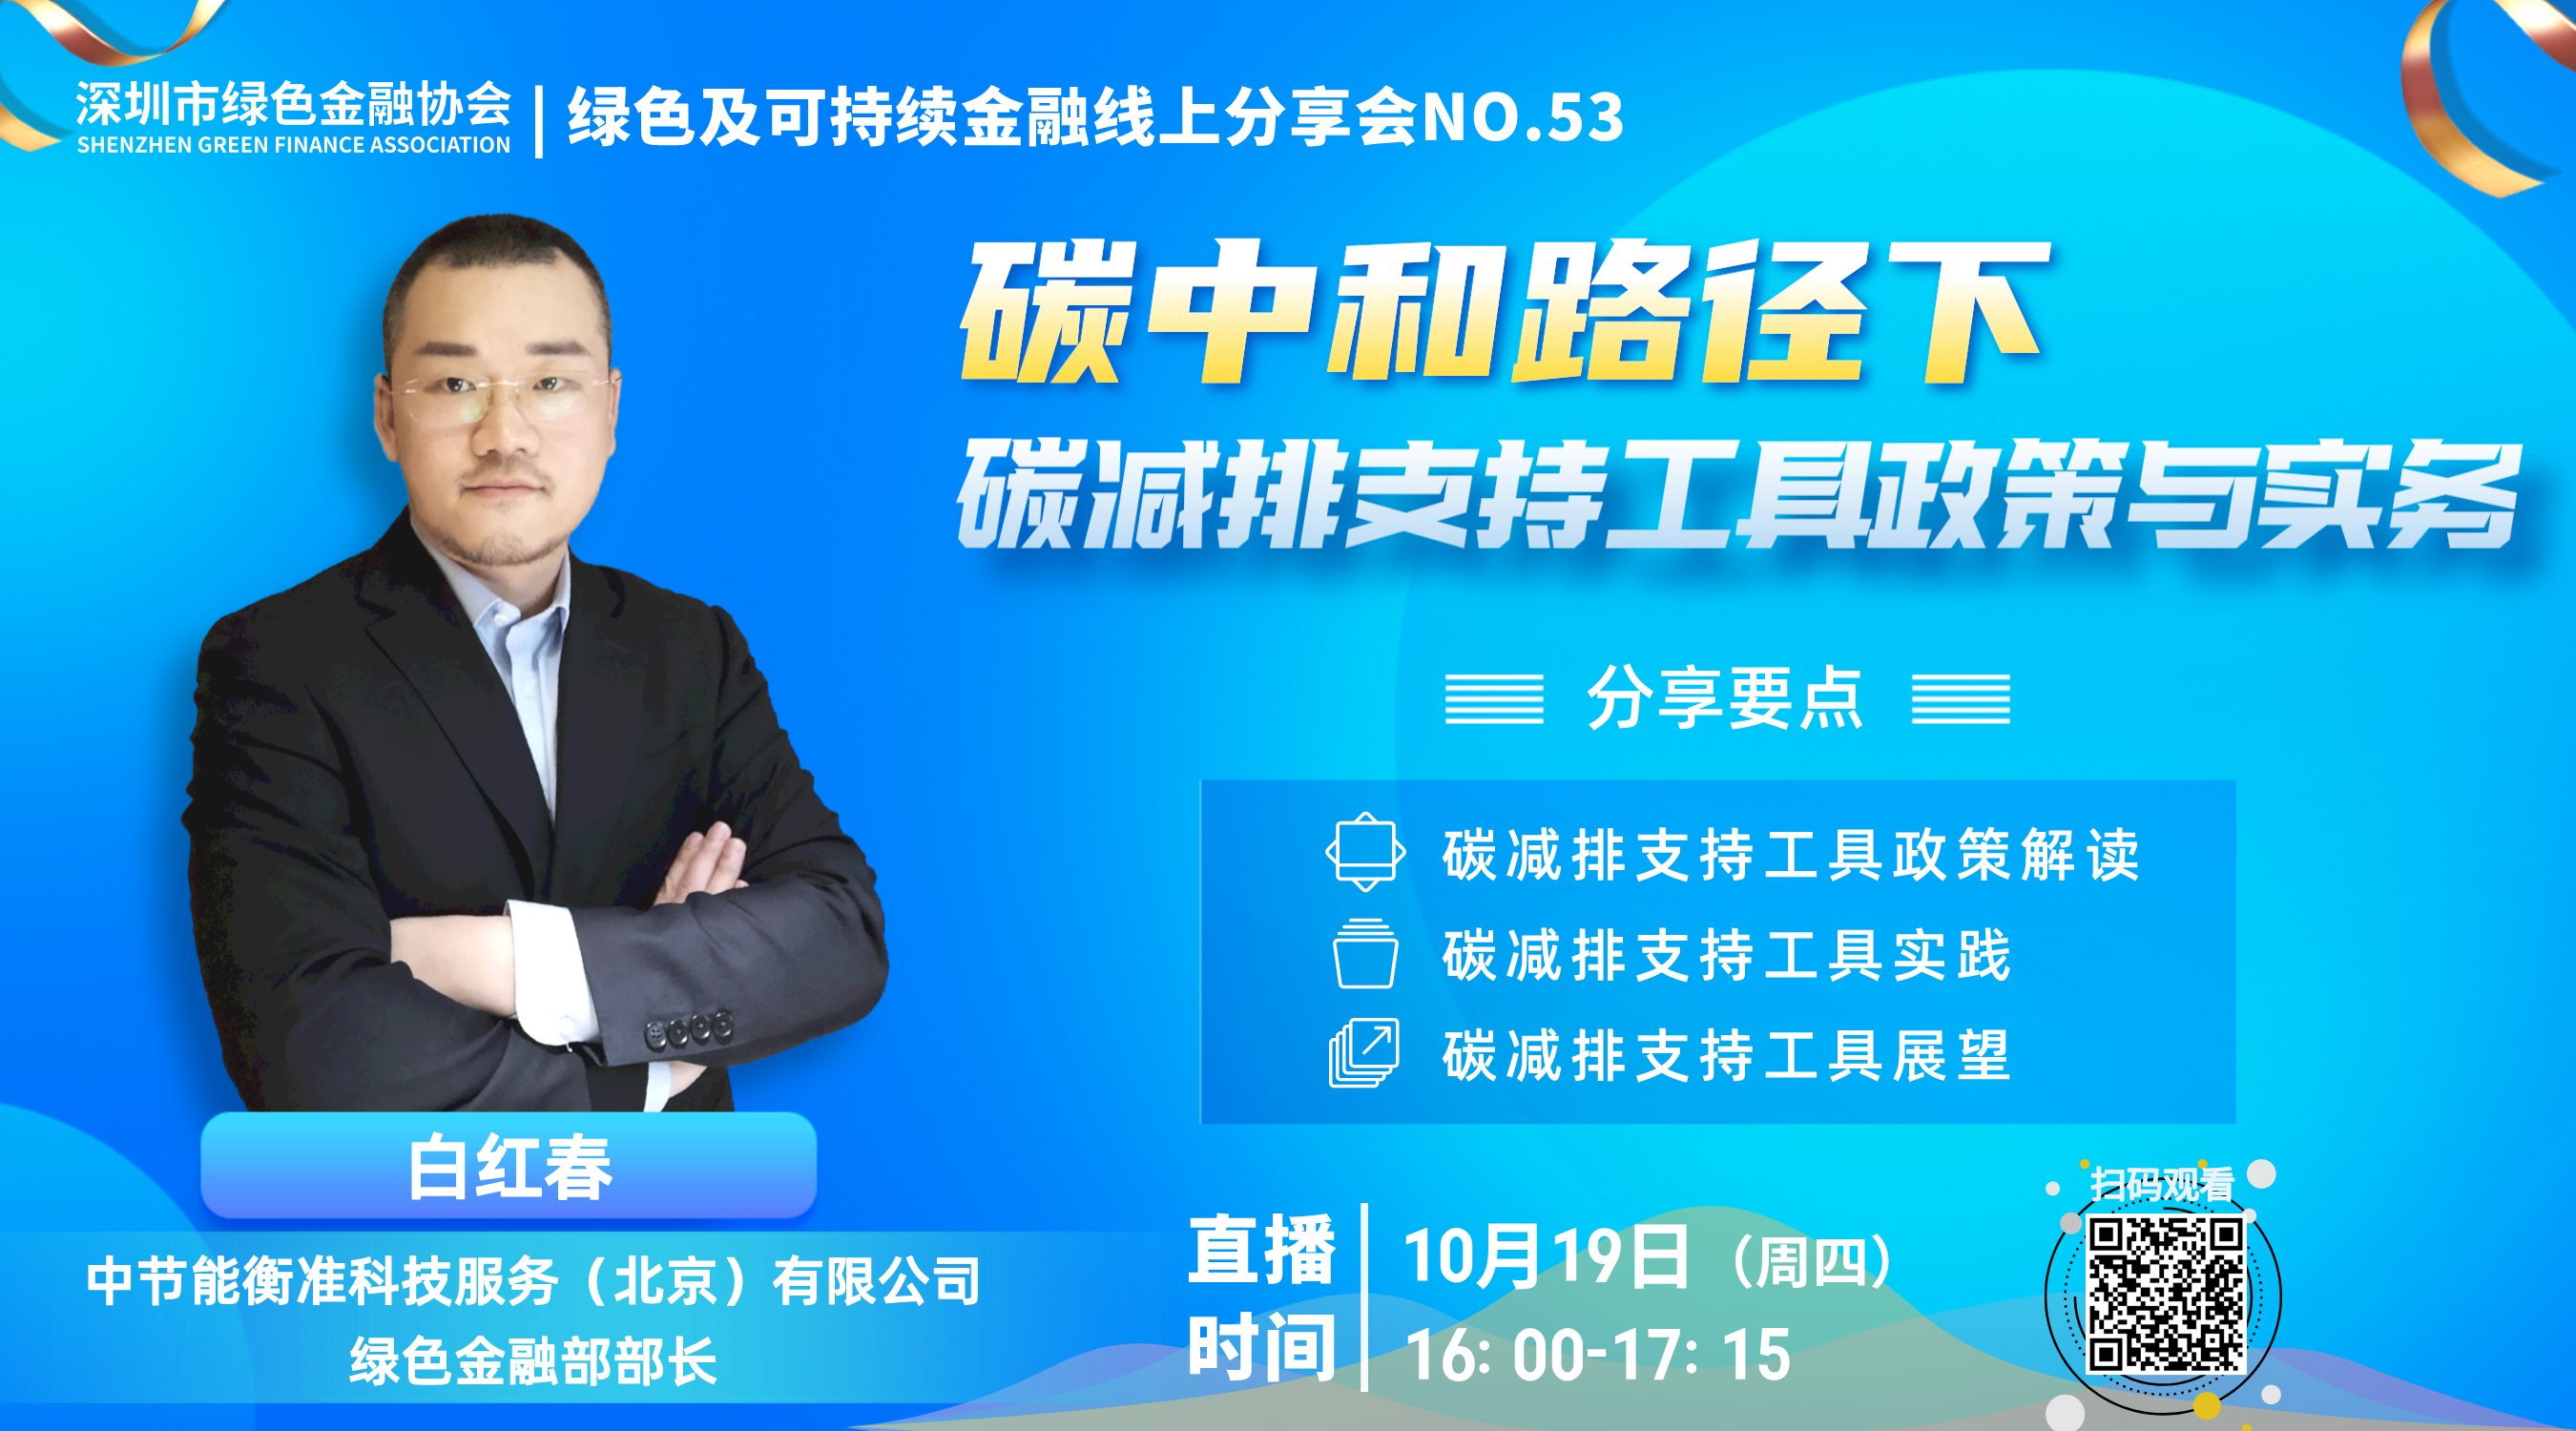 【线上分享会】深圳市绿色金融协会绿色及可持续金融线上分享会NO.53#成功举行